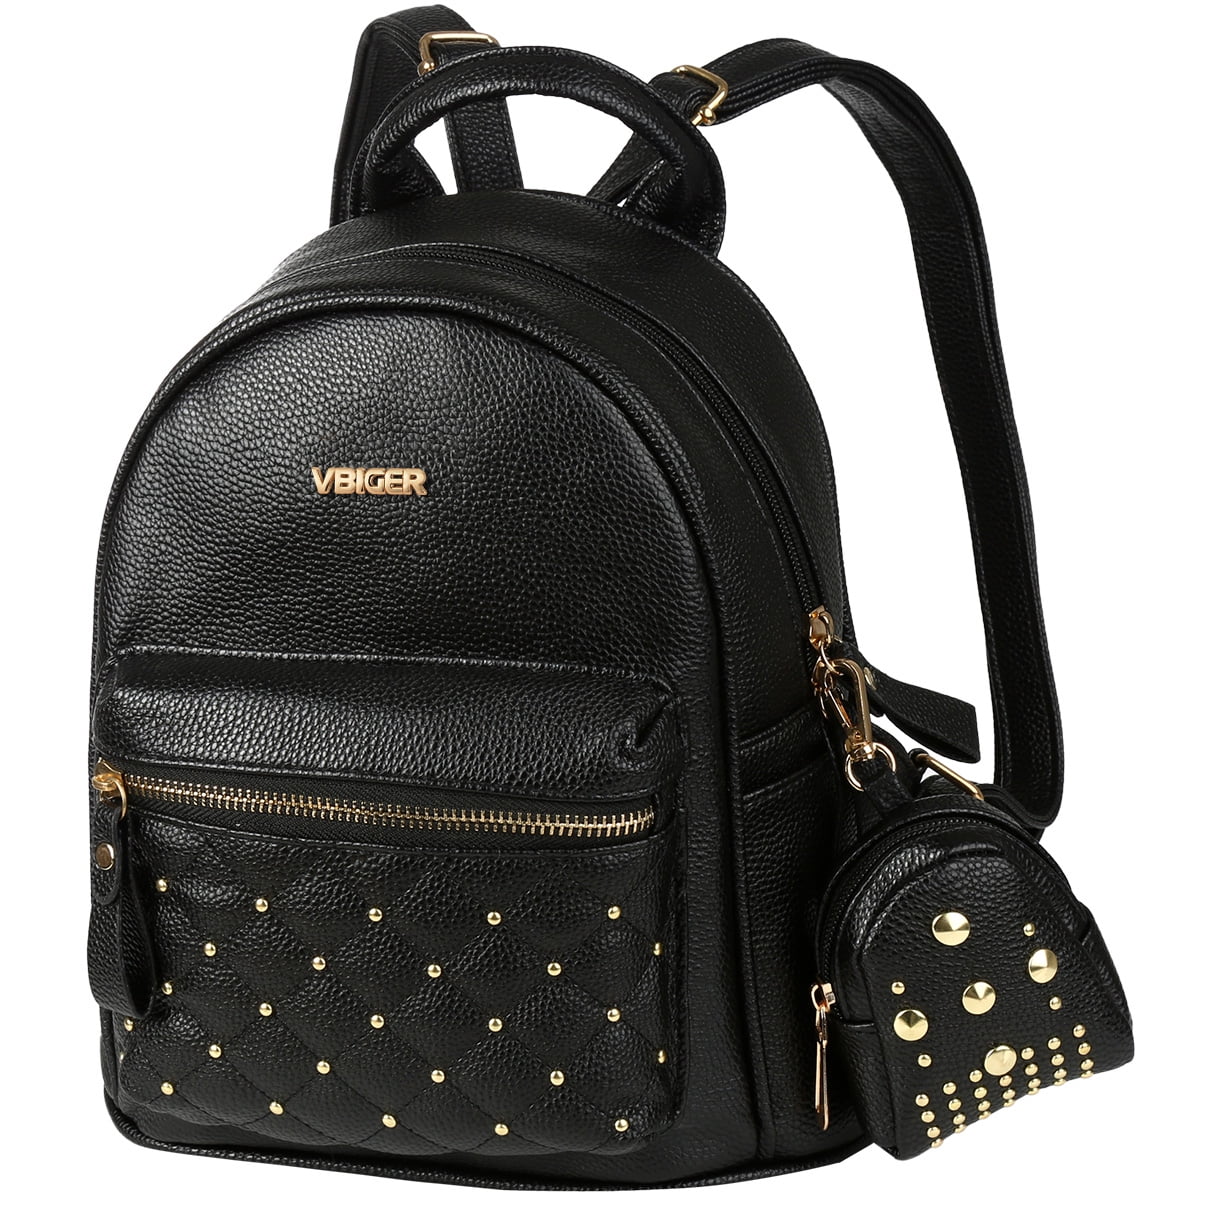 3PCS Women Rivet Backpack Travel PU Leather Handbag Rucksack Shoulder School Bag 